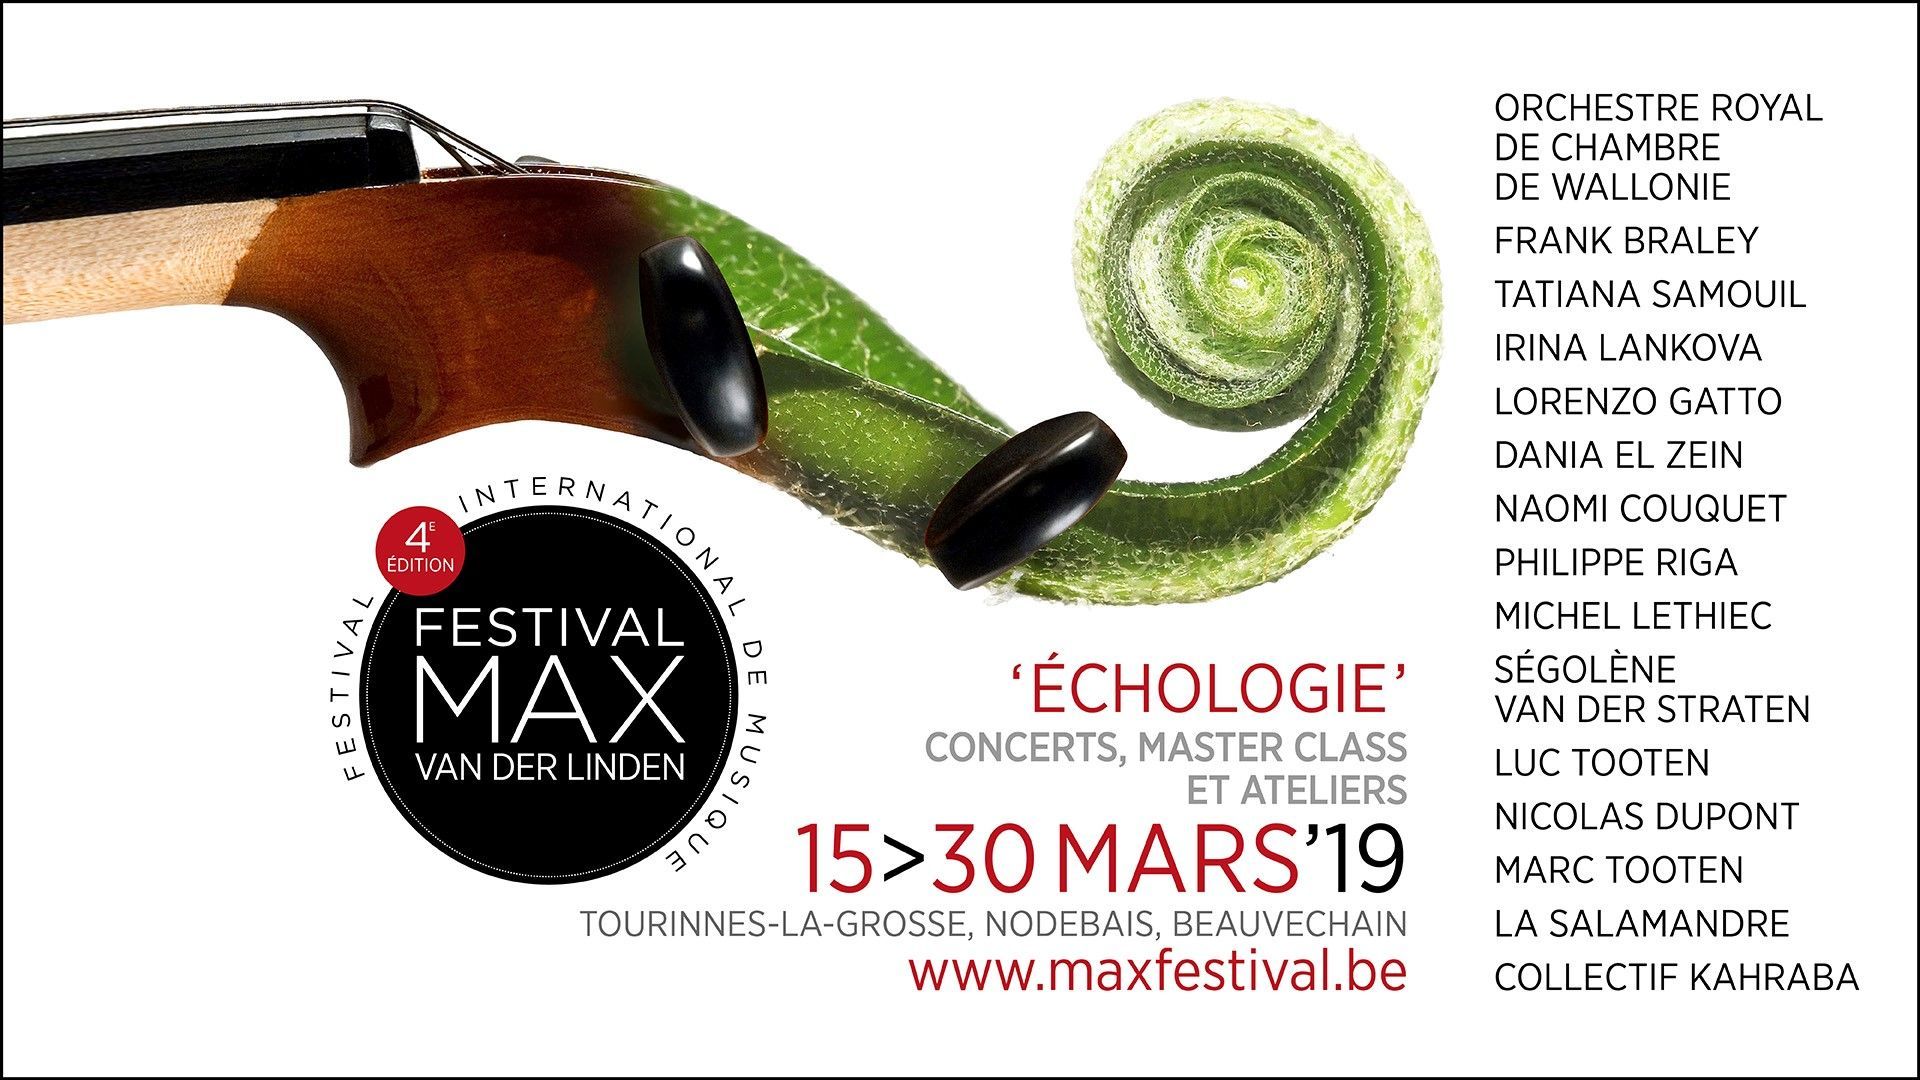 Musiq3 soutient le Festival Max van der Linden